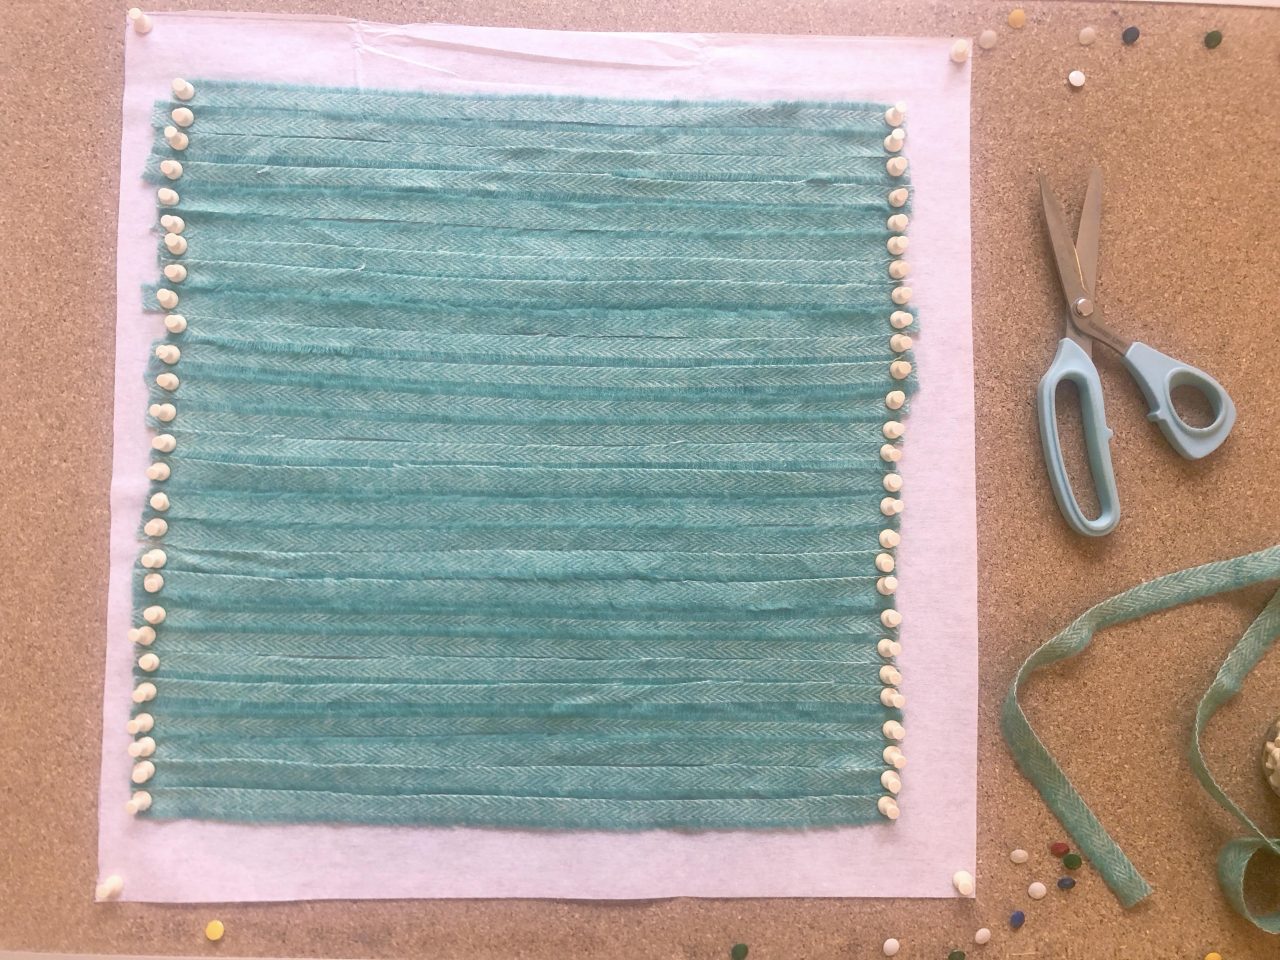 Jade blanket yarn warp for blanket yarn weaving